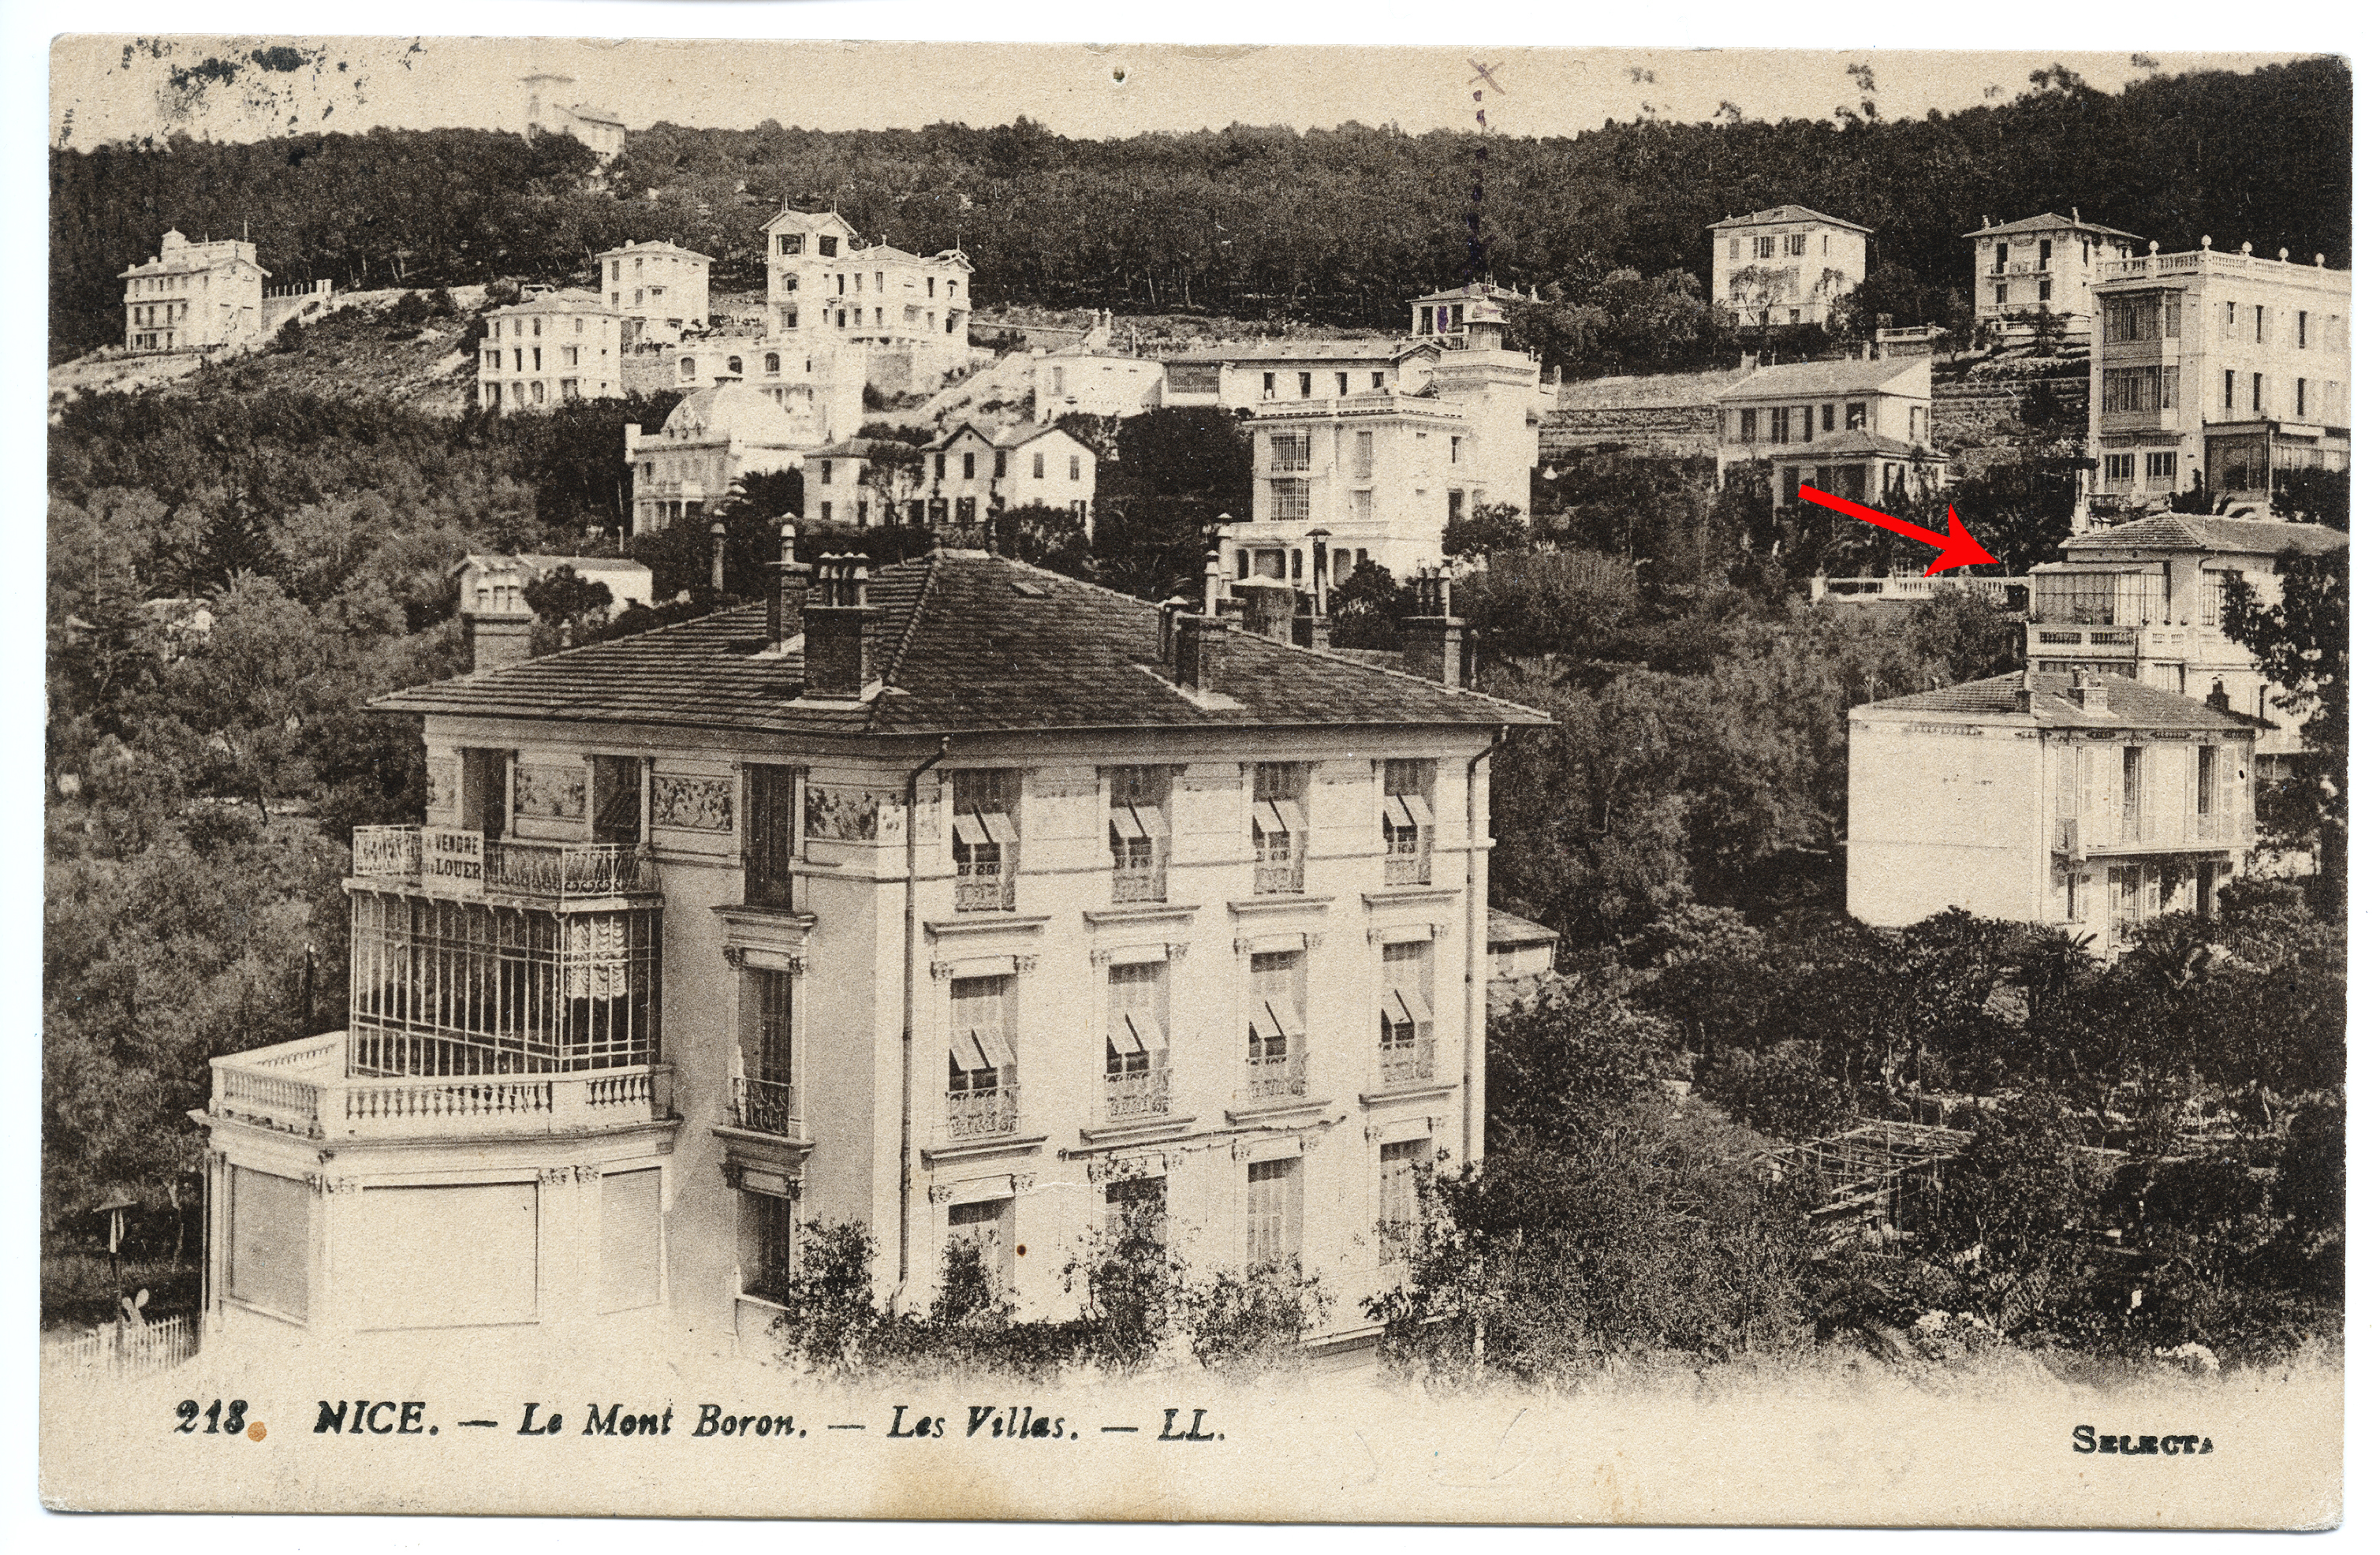 maison de villégiature (villa balnéaire) dite Roc à Pic, devenue ensuite annexe du Grand Hôtel du Mont-Boron, actuellement immeuble